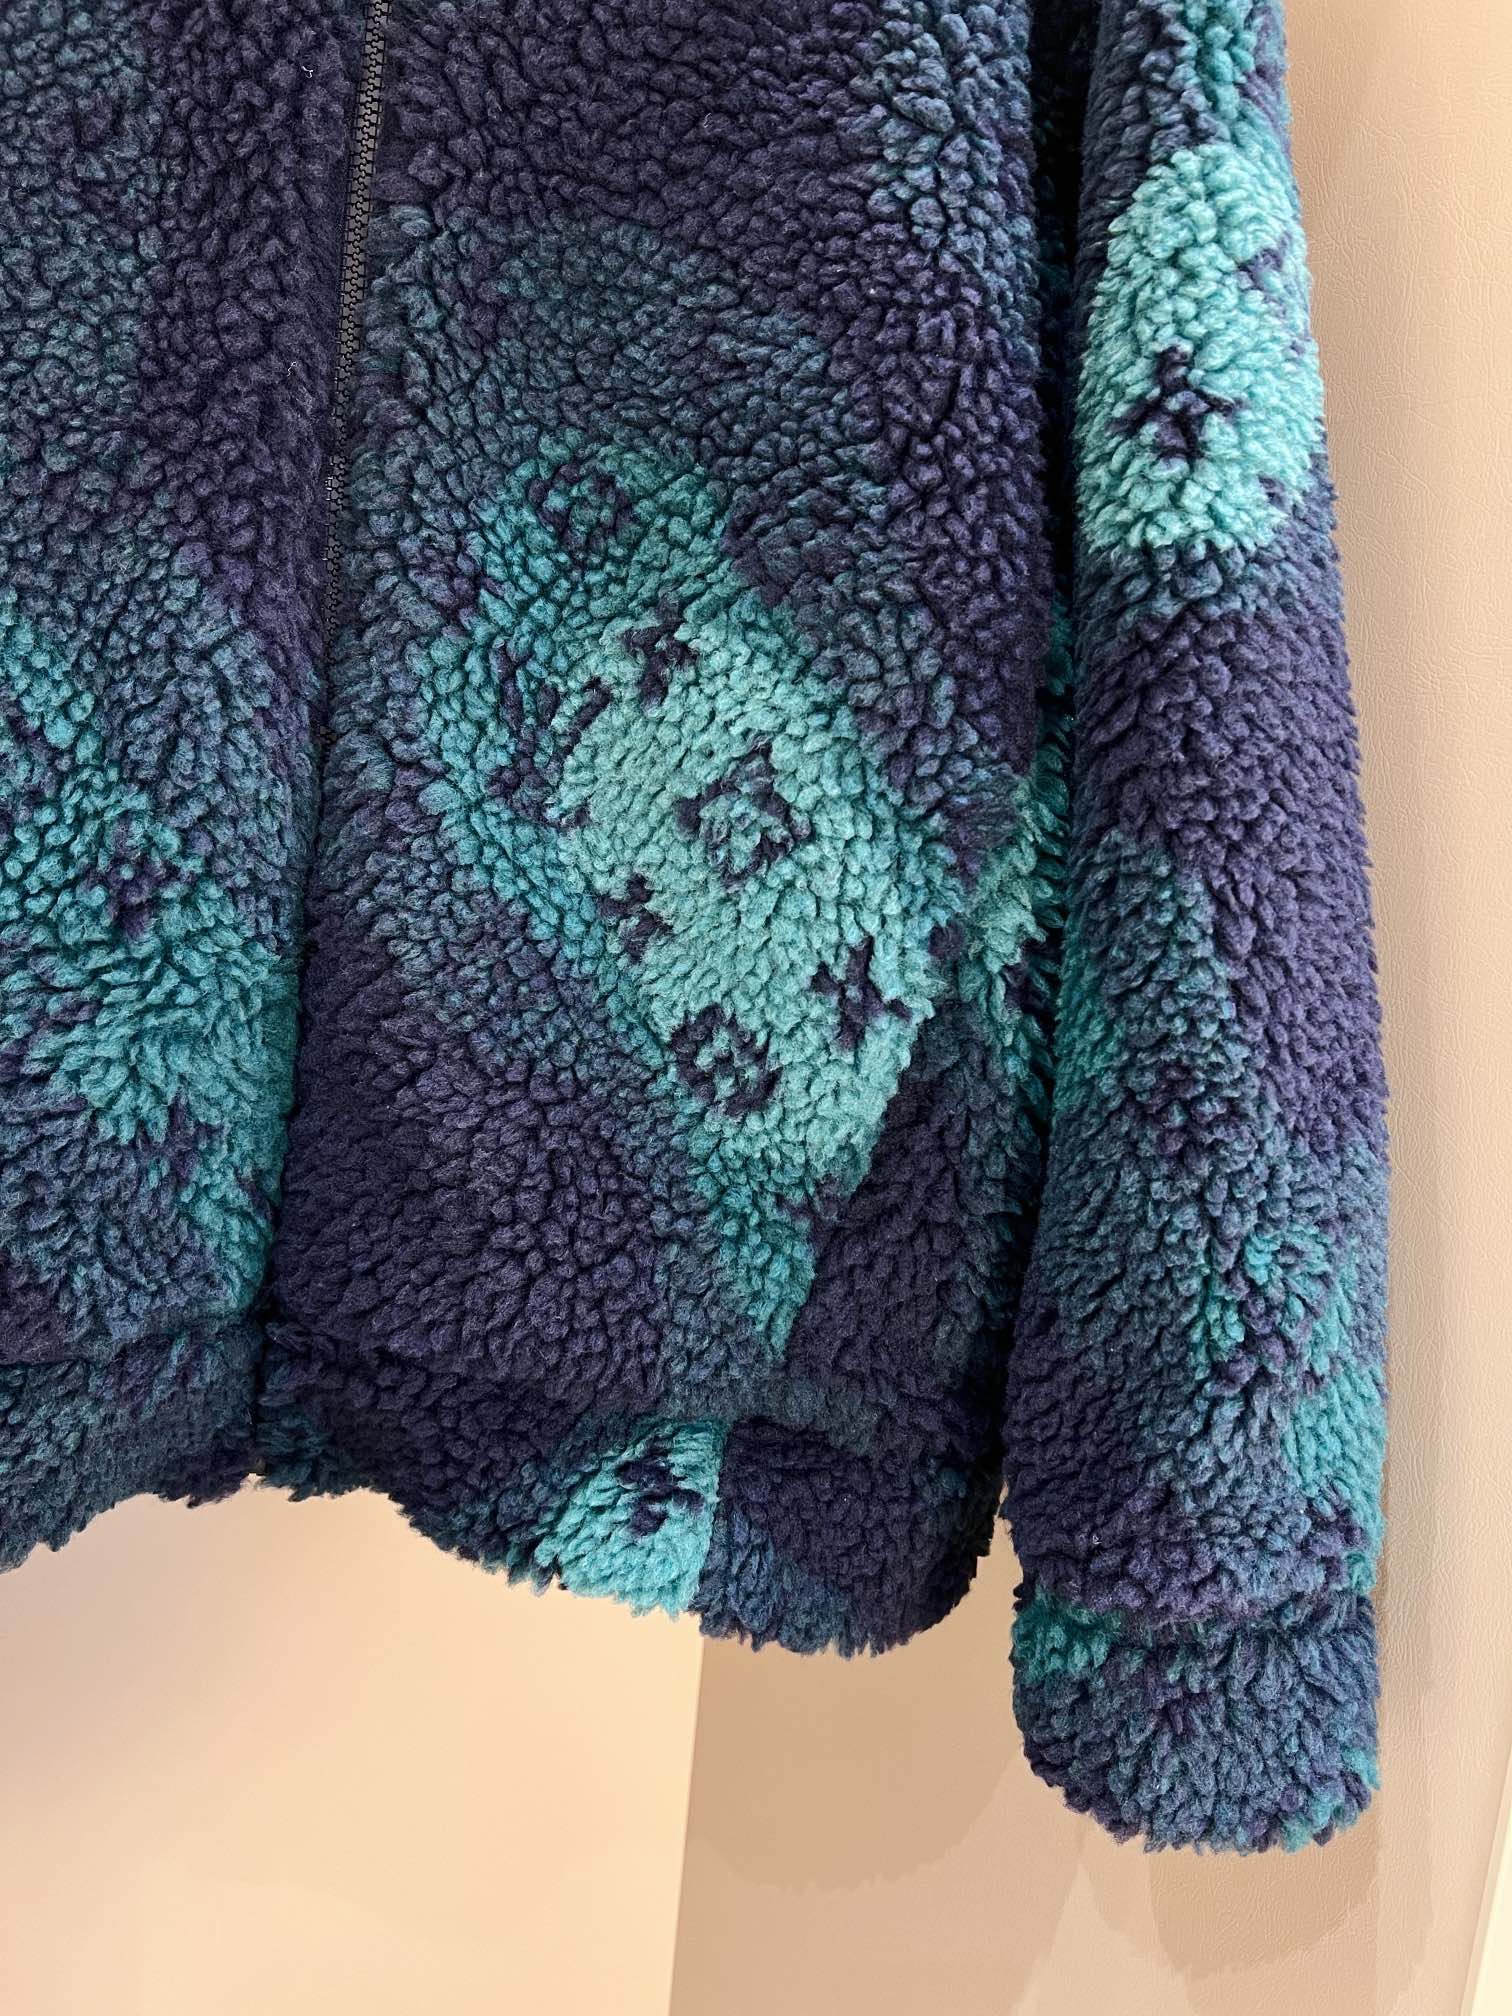 Louis Vuitton /路易威登2022ss 秋季新款 Monogram Camo绒面束腰羊羔毛夹克外套